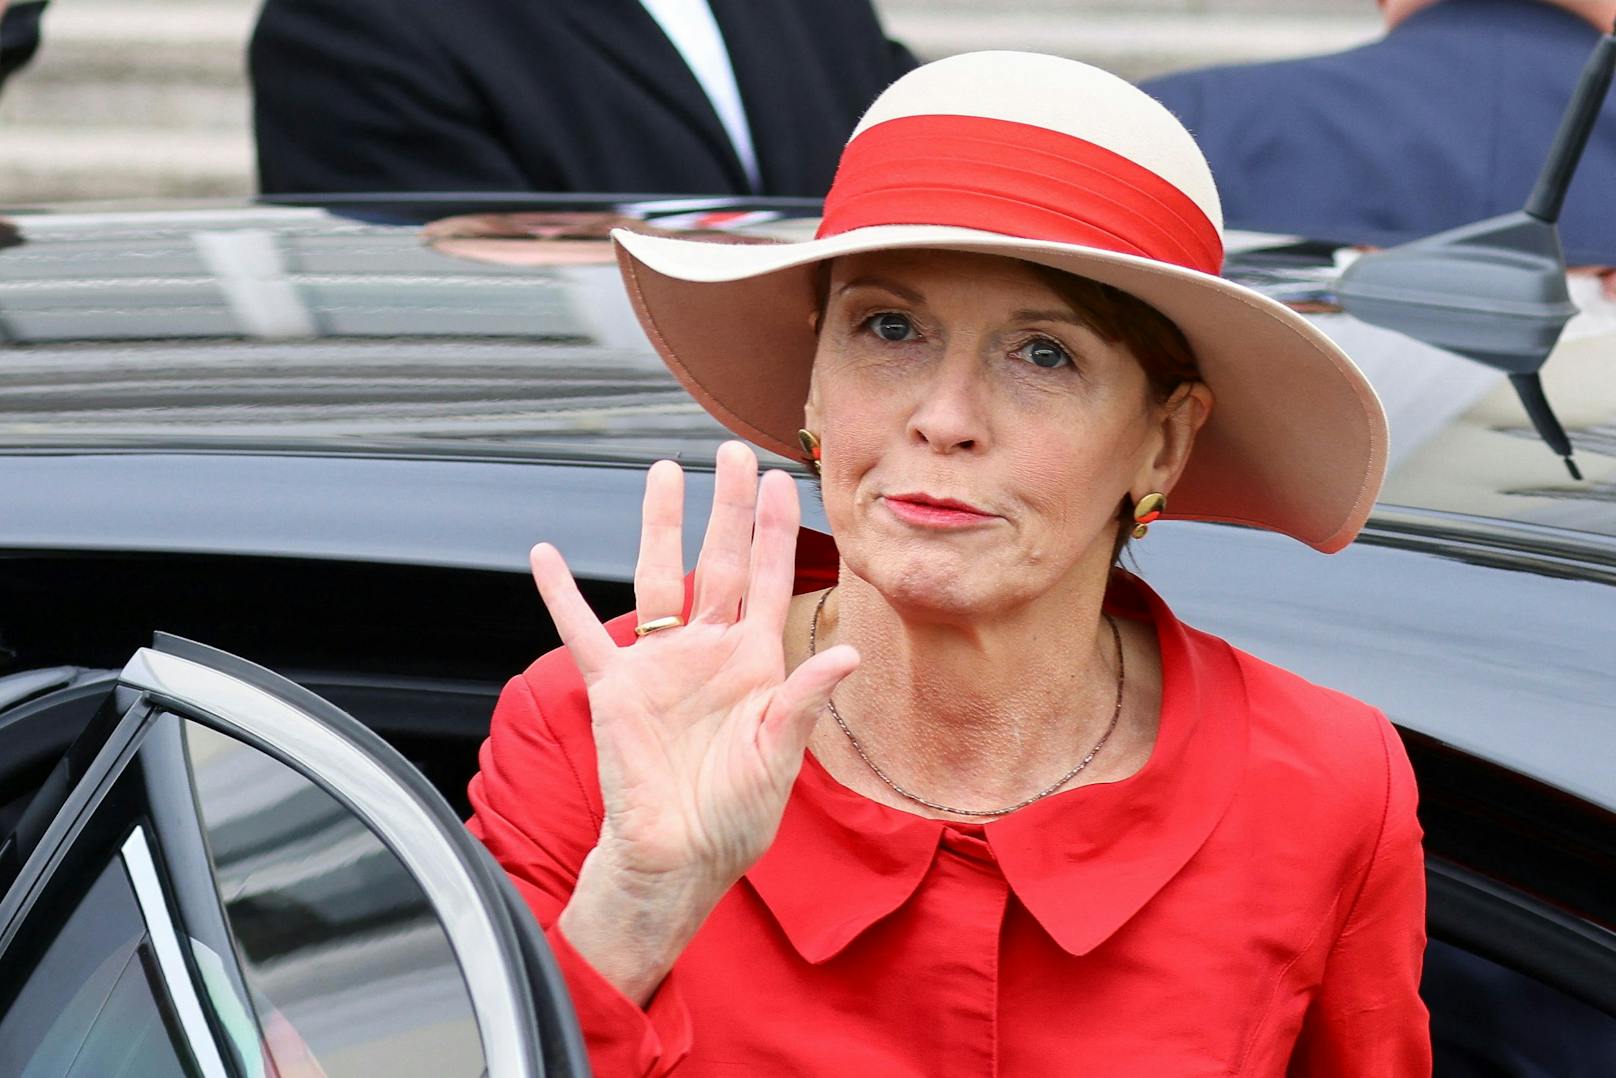 Elke Büdenbender, Ehefrau des deutschen Bundespräsidenten Frank-Walter Steinmeier, kam als "Lady in Red" zum Royal-Treffen.